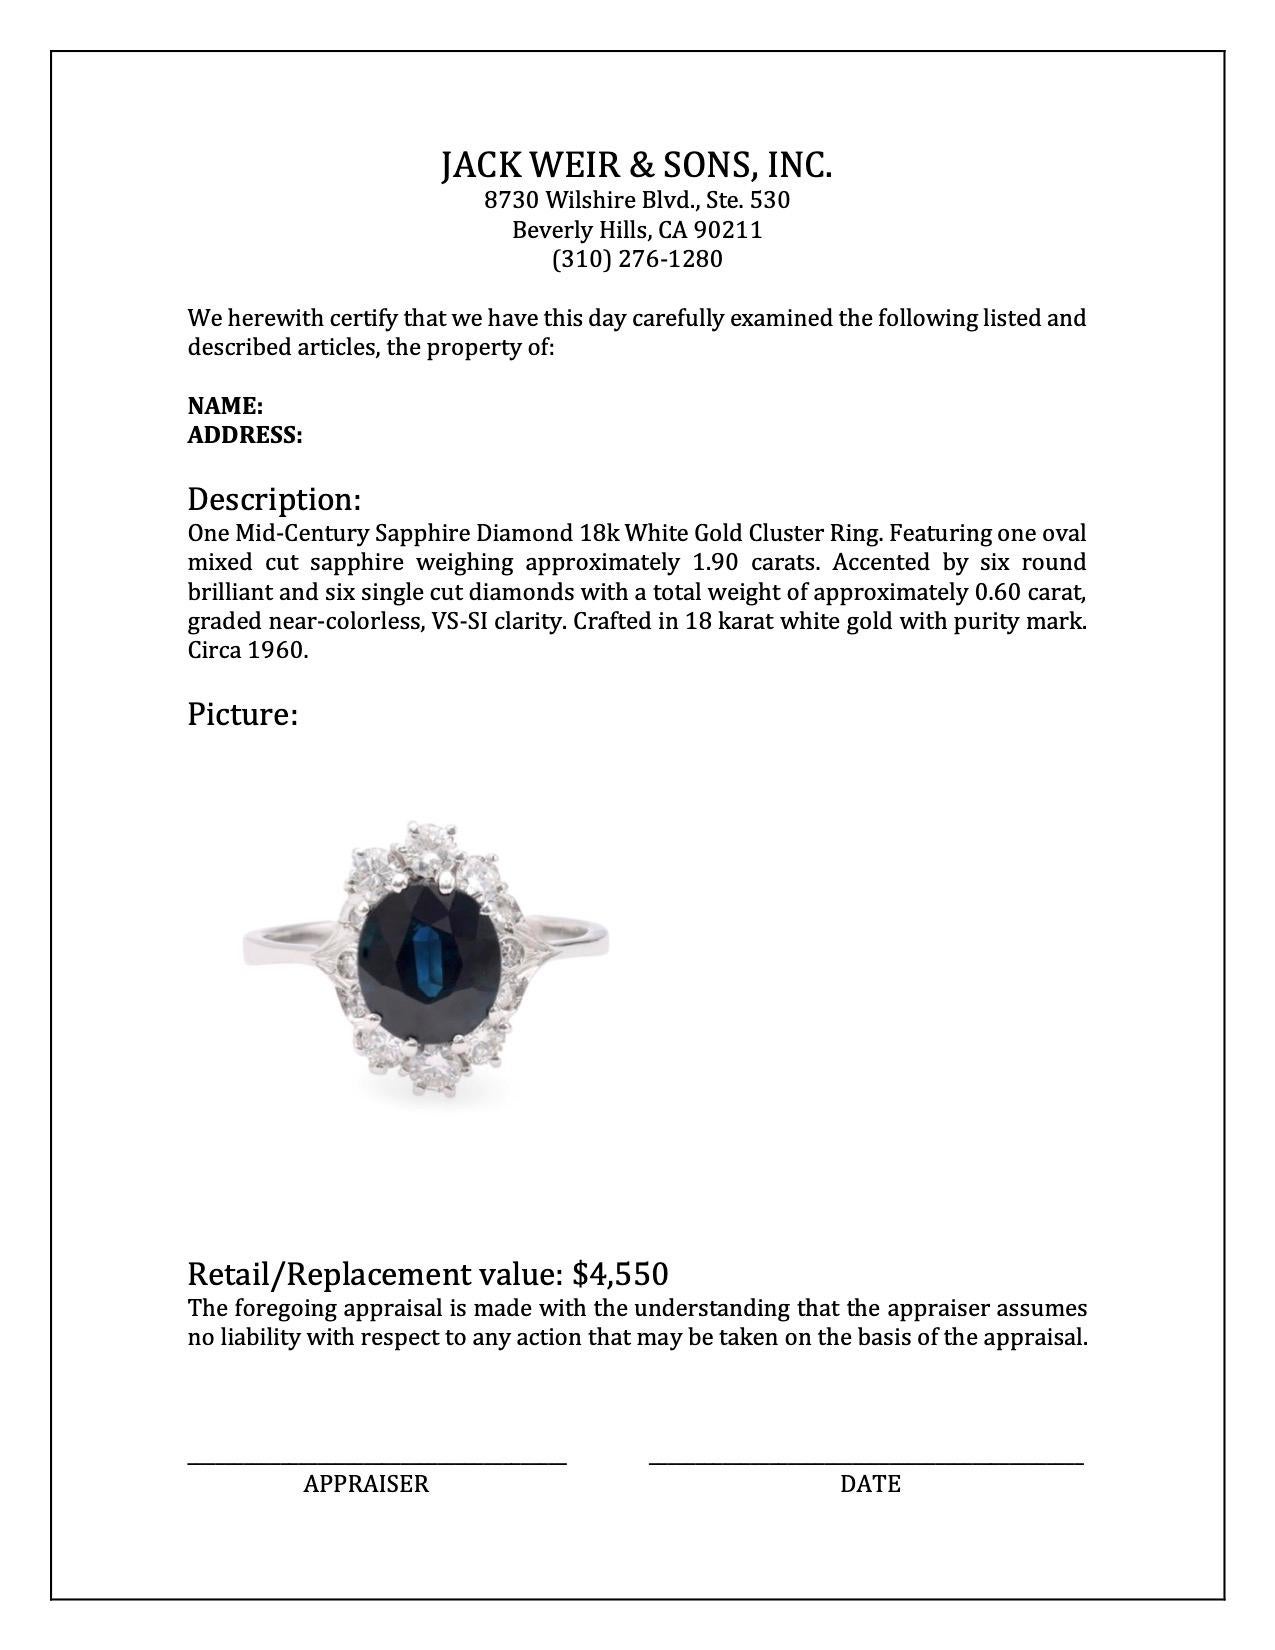 Women's or Men's Mid-Century Sapphire Diamond 18k White Gold Cluster Ring For Sale